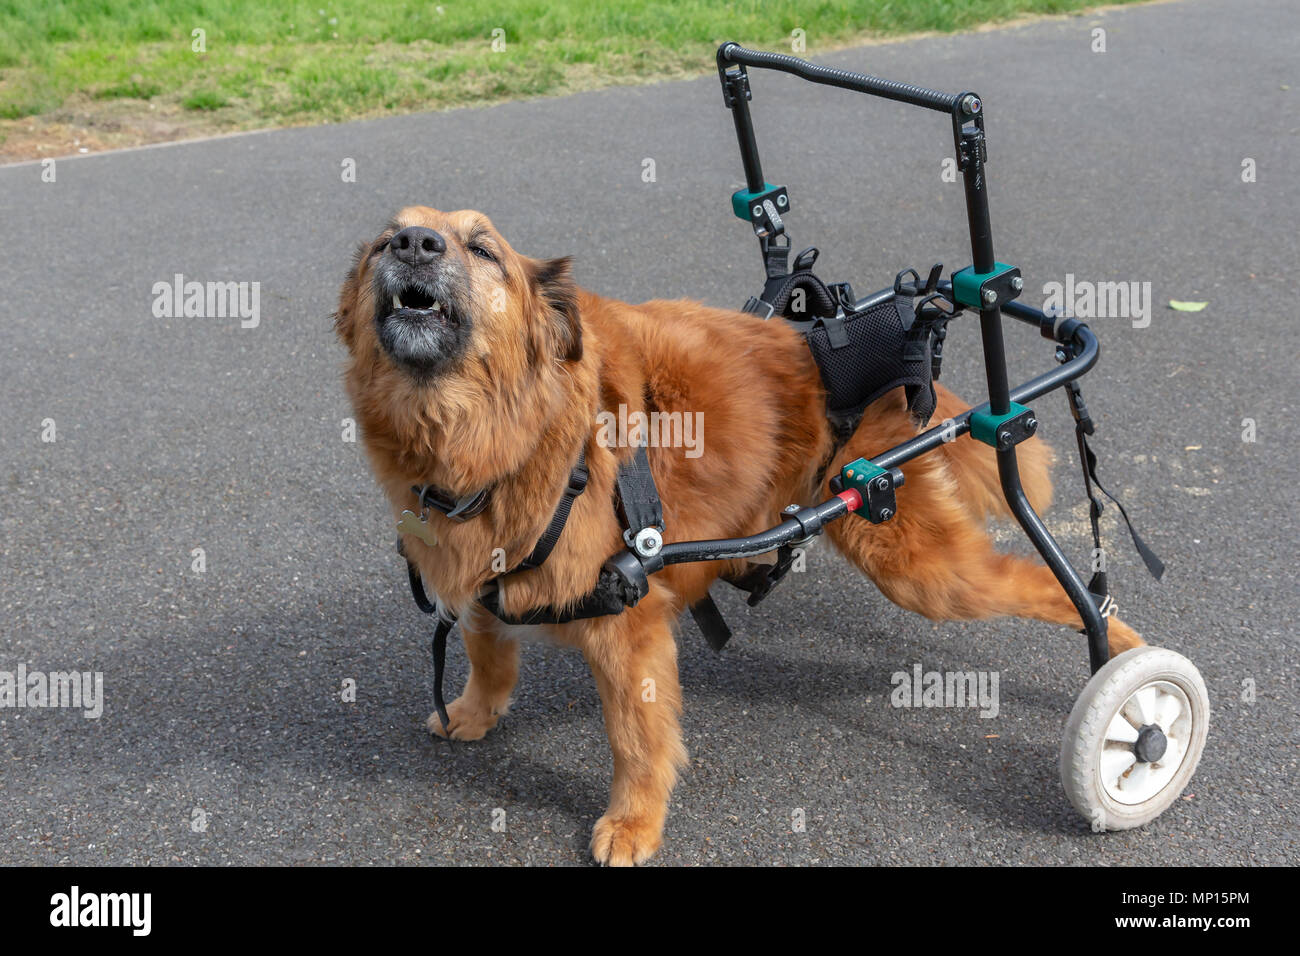 Vierzehn Jahre alten Hund mit Arthritis verwendet eine benutzerdefinierte Gehhilfe mit seiner Mobilität in einem in Cheshire, England, zu unterstützen Stockfotografie - Alamy